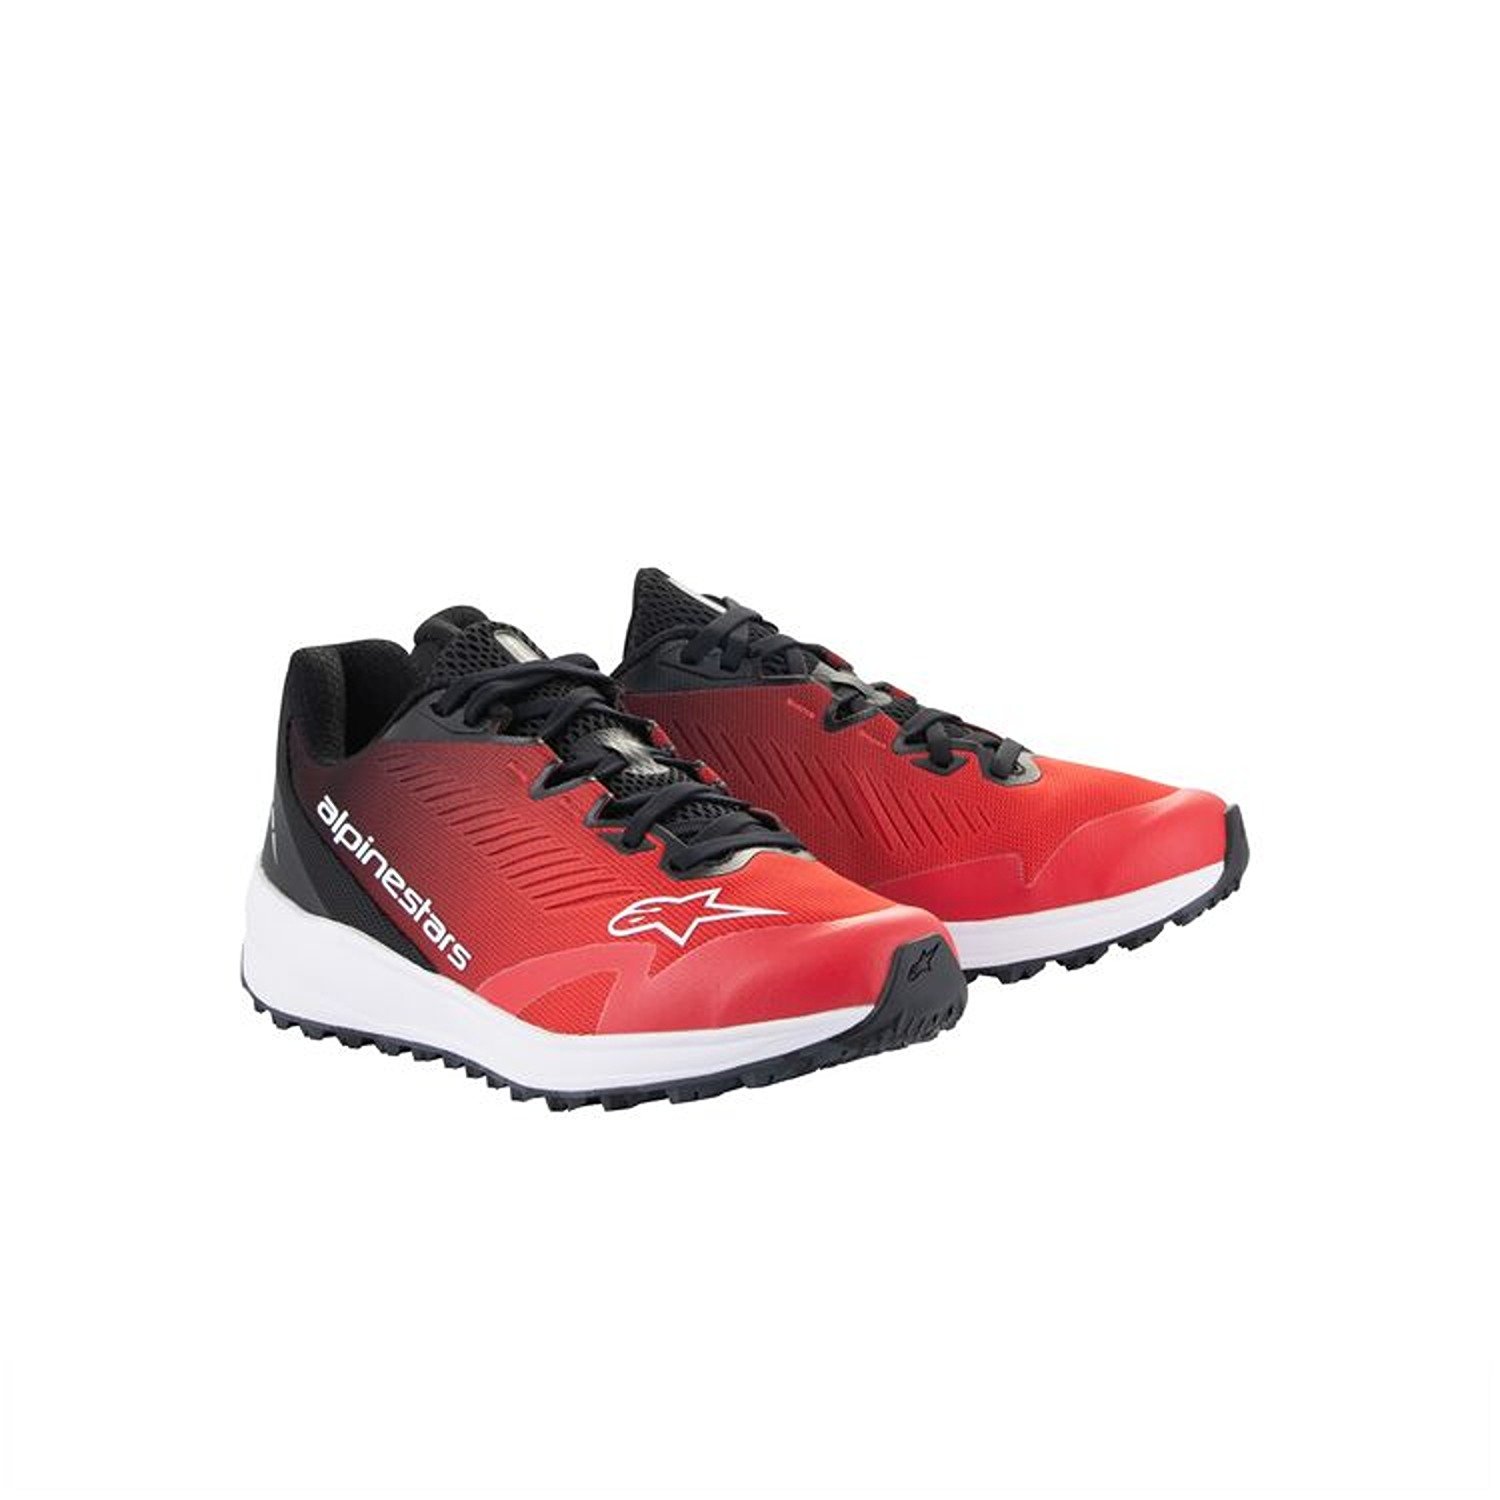 Image of Alpinestars Meta Road V2 Shoes Red Black White Größe US 115